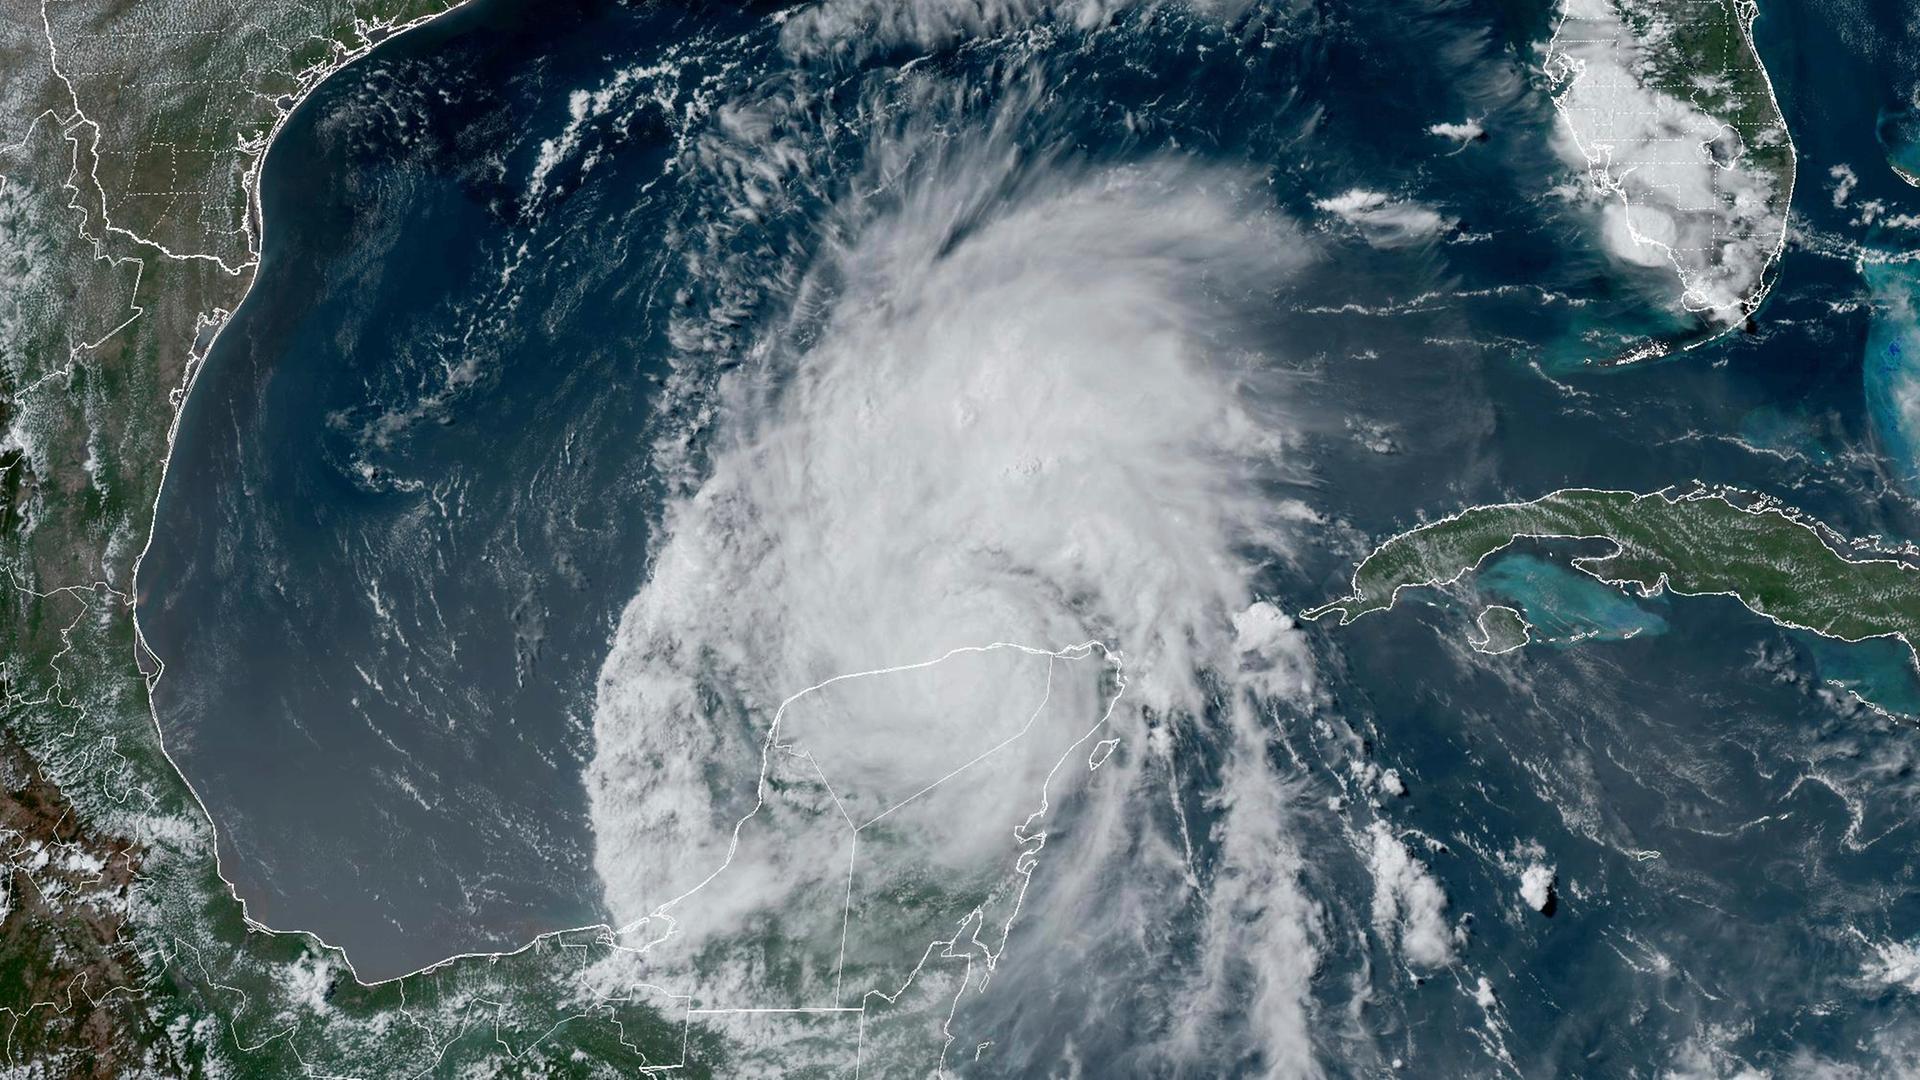 Der riesige Hurrikan ist als weiße Wolkenspirale zu sehen. Die Küsten der USA und Mexikos sind weiß liniert.